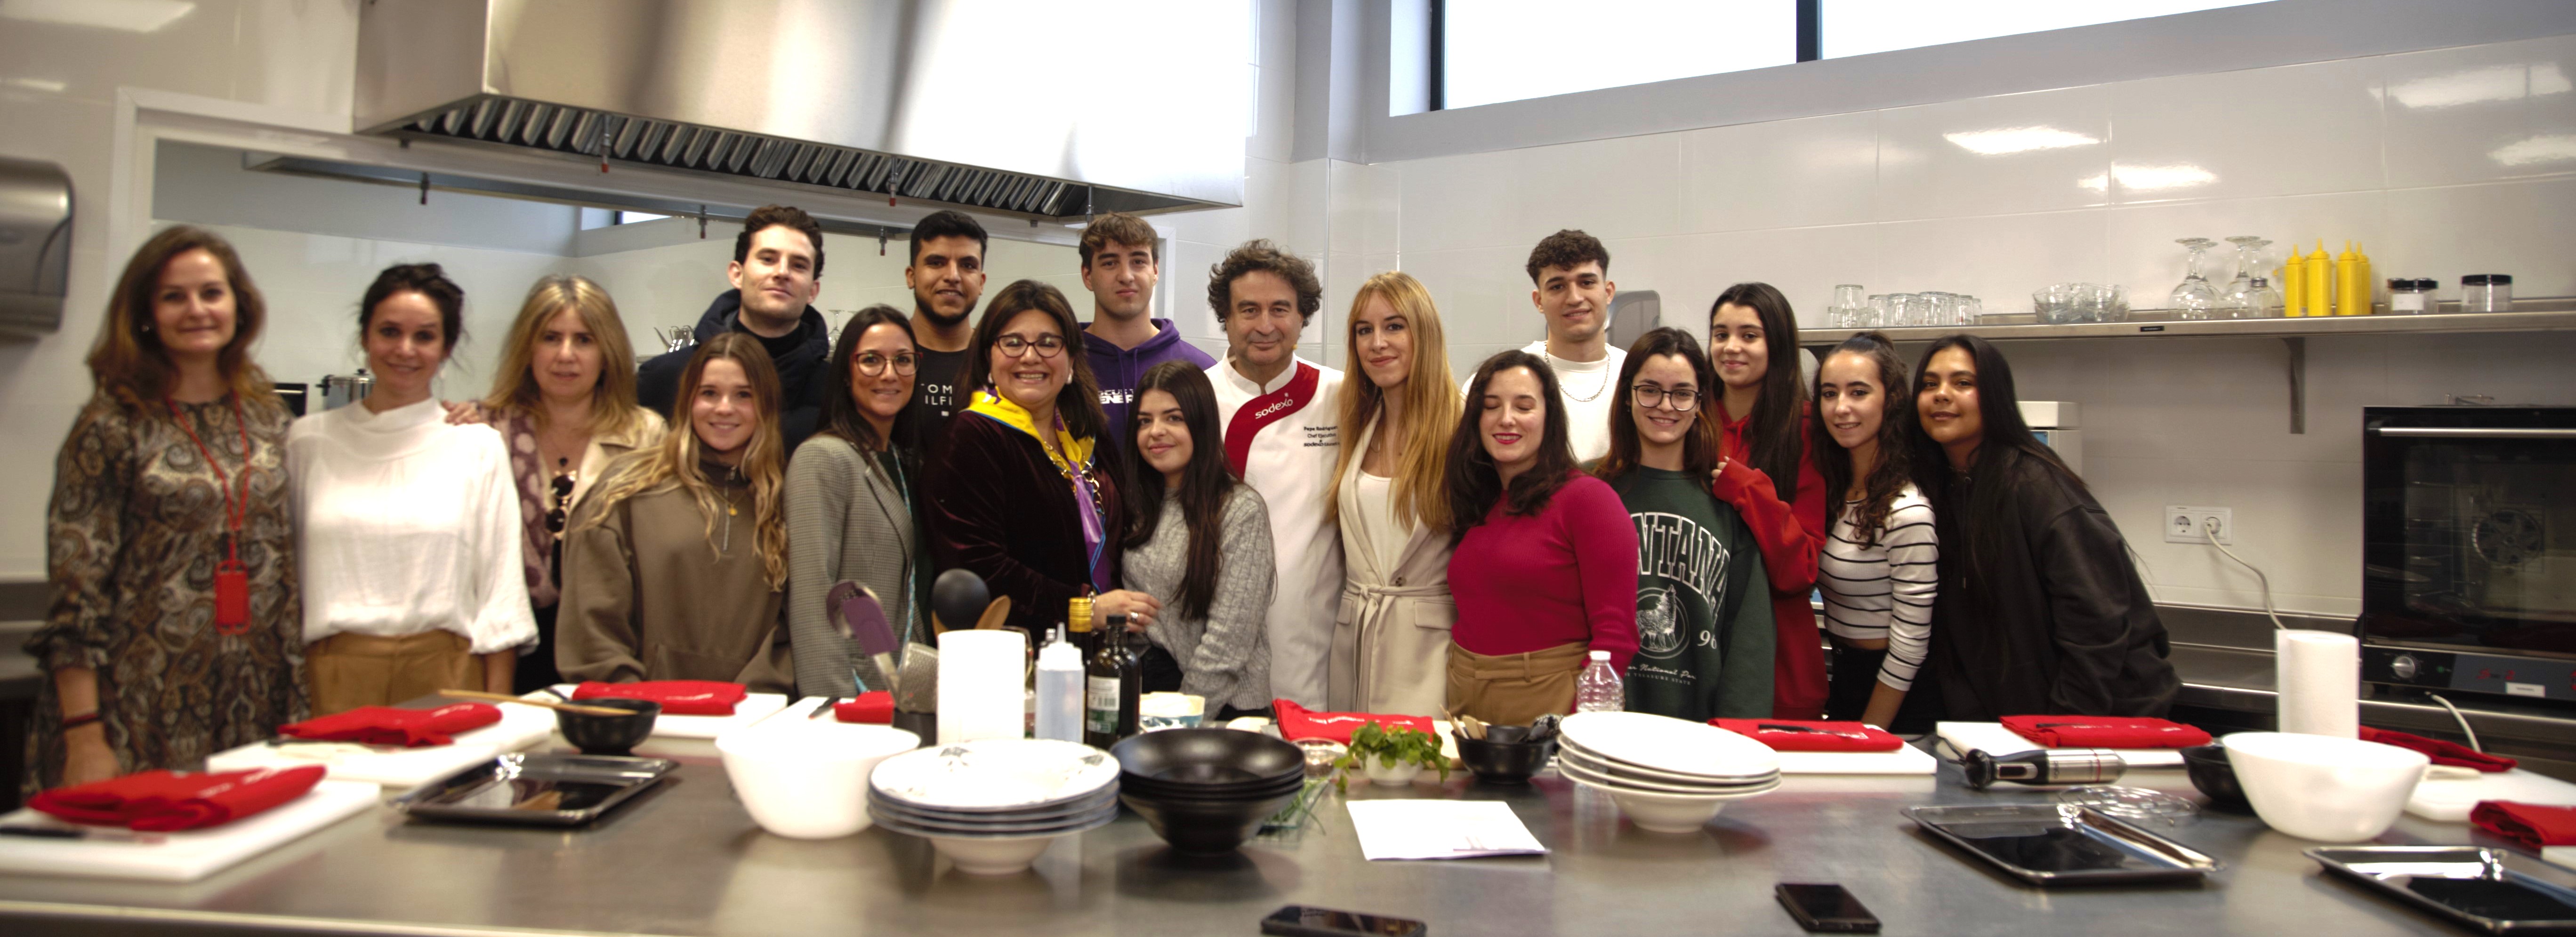 Pepe Rodríguez junto a los estudiantes asistentes a la masterclass, y otros profesores de la Universidad Europea